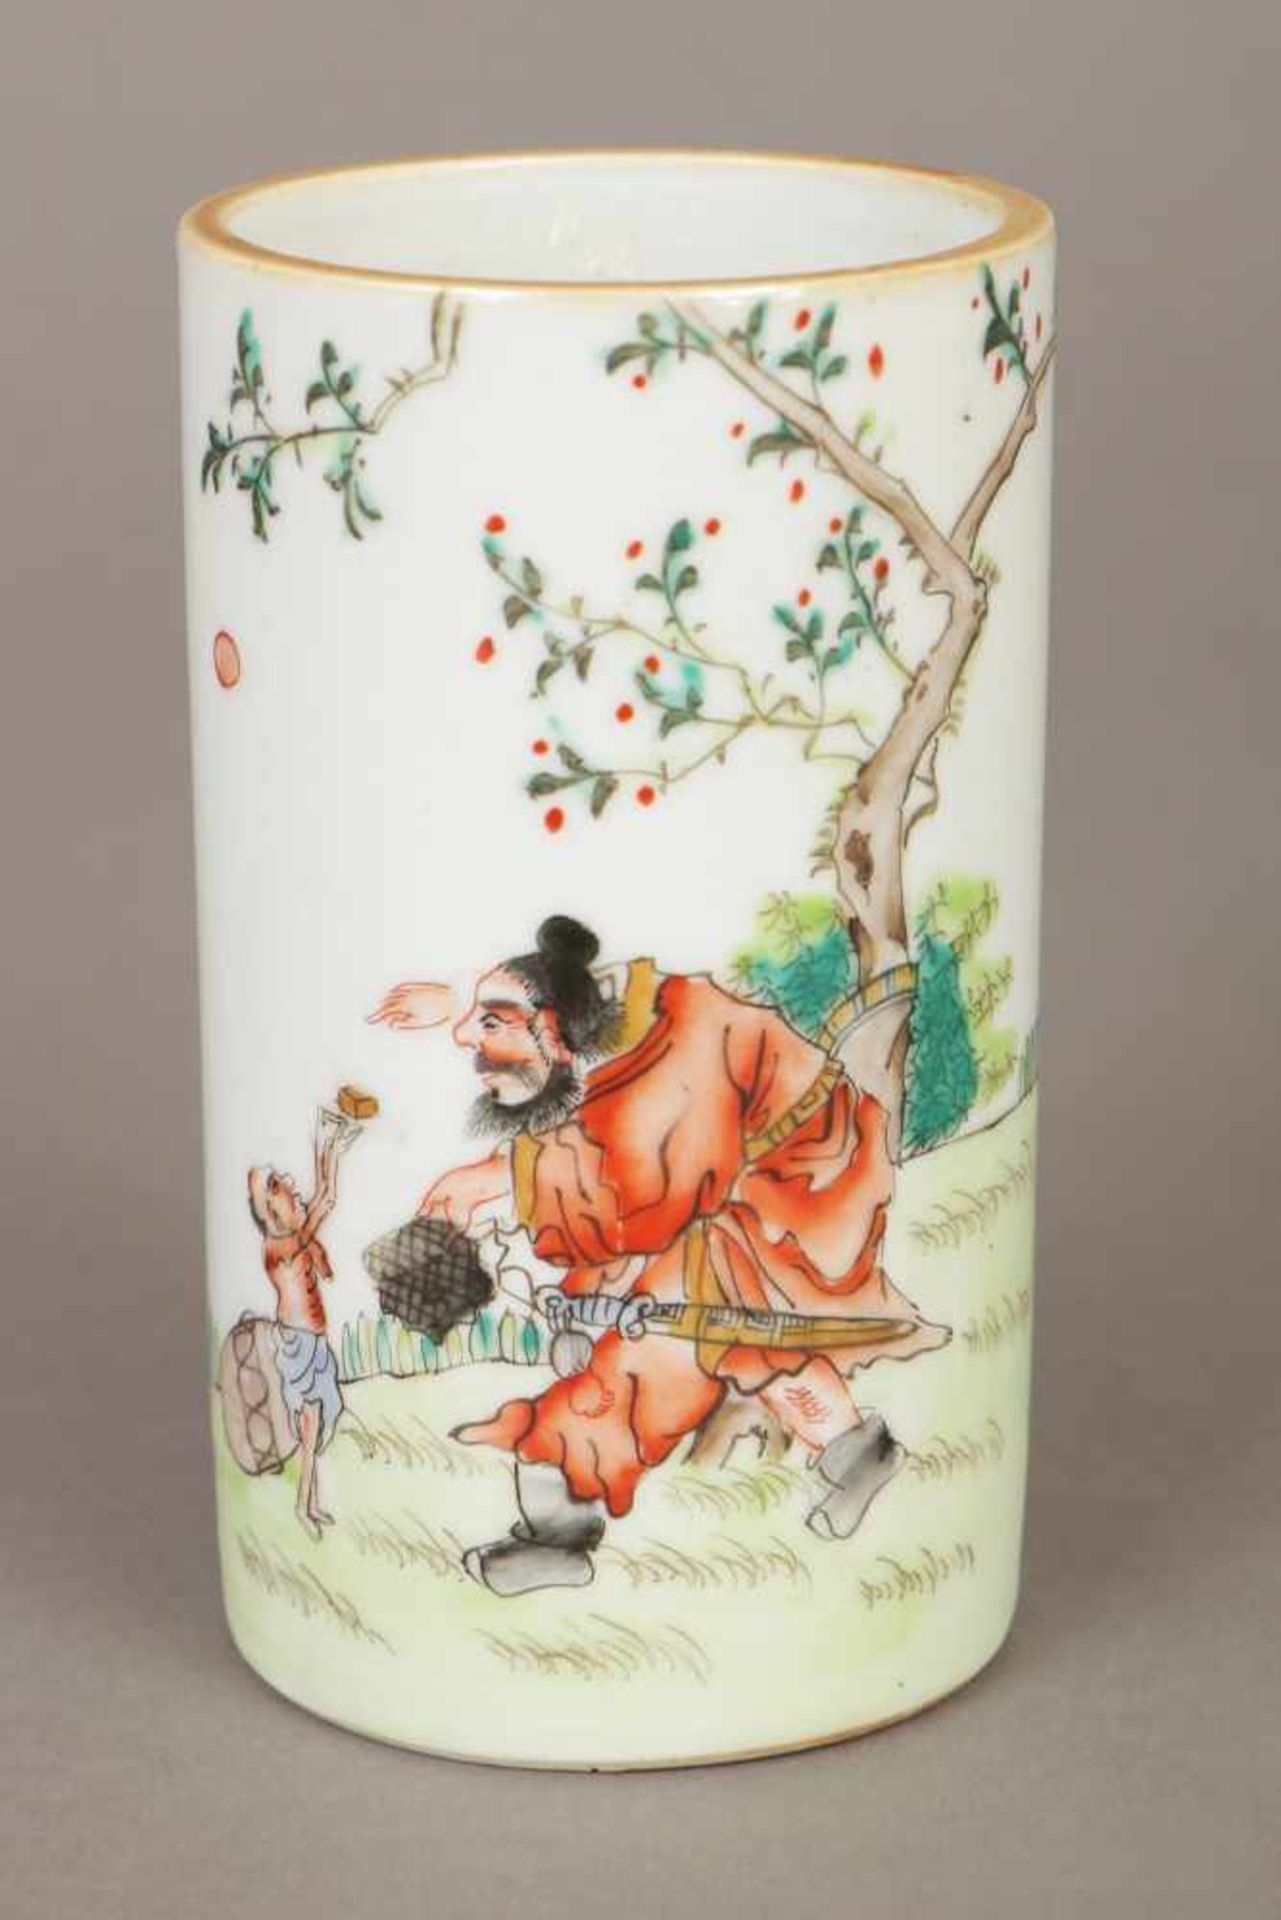 Chinesischer PinselbecherPorzellan, zylindrisches Gefäß, polychrome Malerei mit Figurendekor (